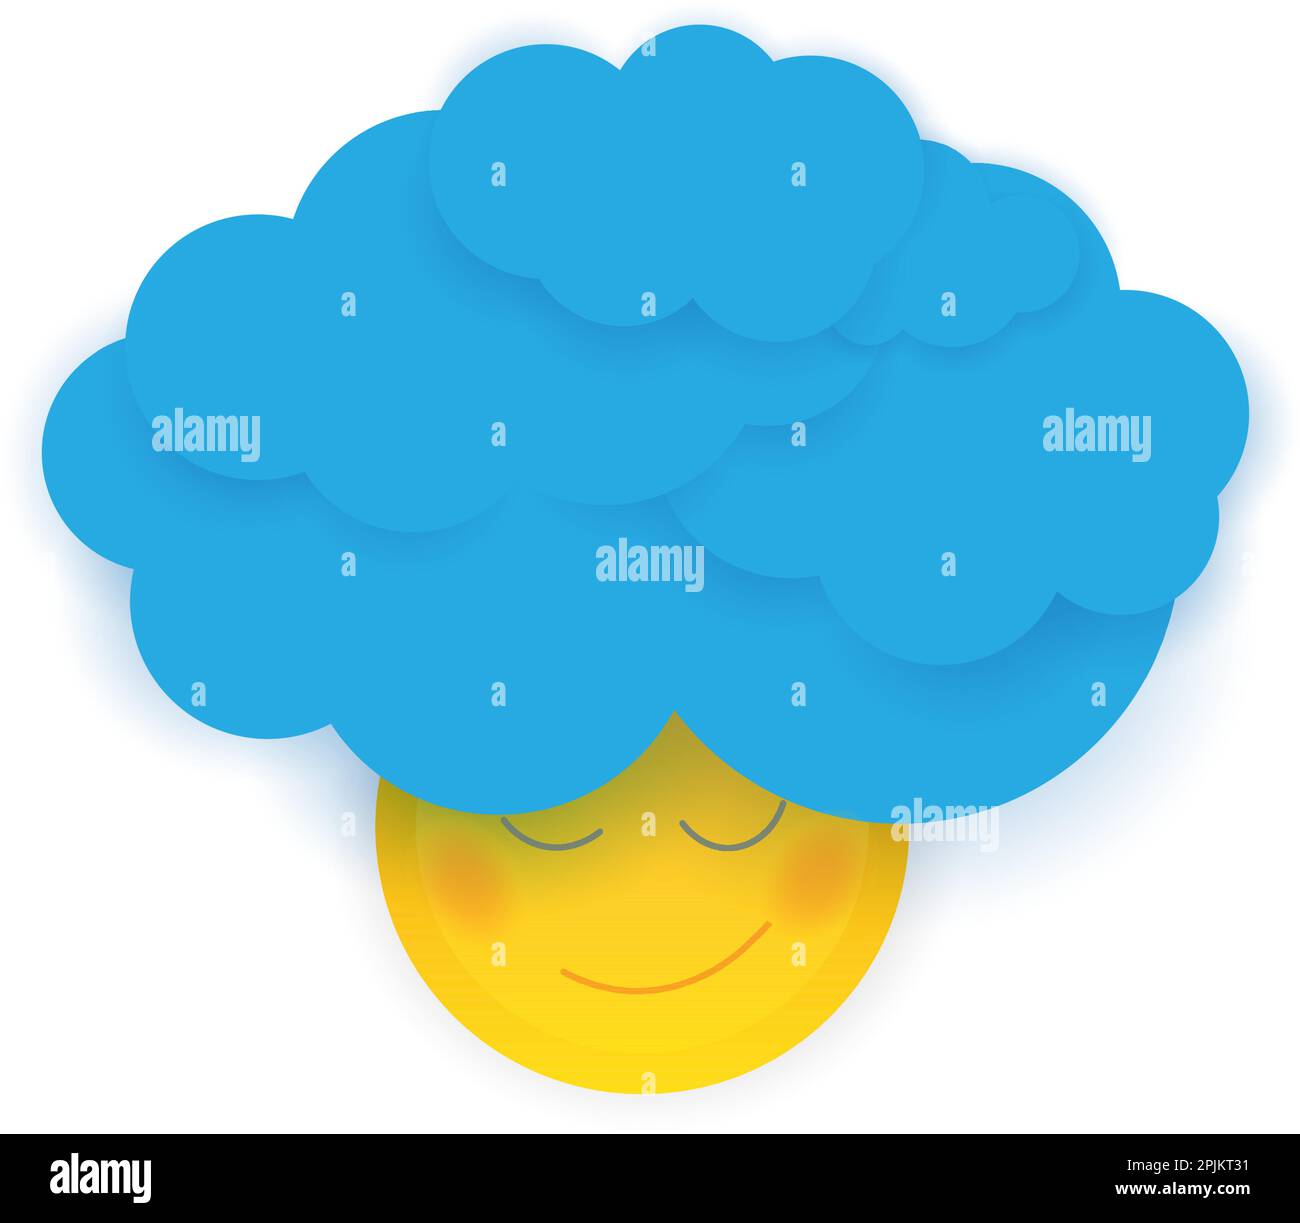 Soleil souriant personnage avec les cheveux bouclés faite de nuages bleus. L'illustration qui font preuve d'émotions positives et d'énergie. Modèle de coupe de papier illustra vecteur Illustration de Vecteur